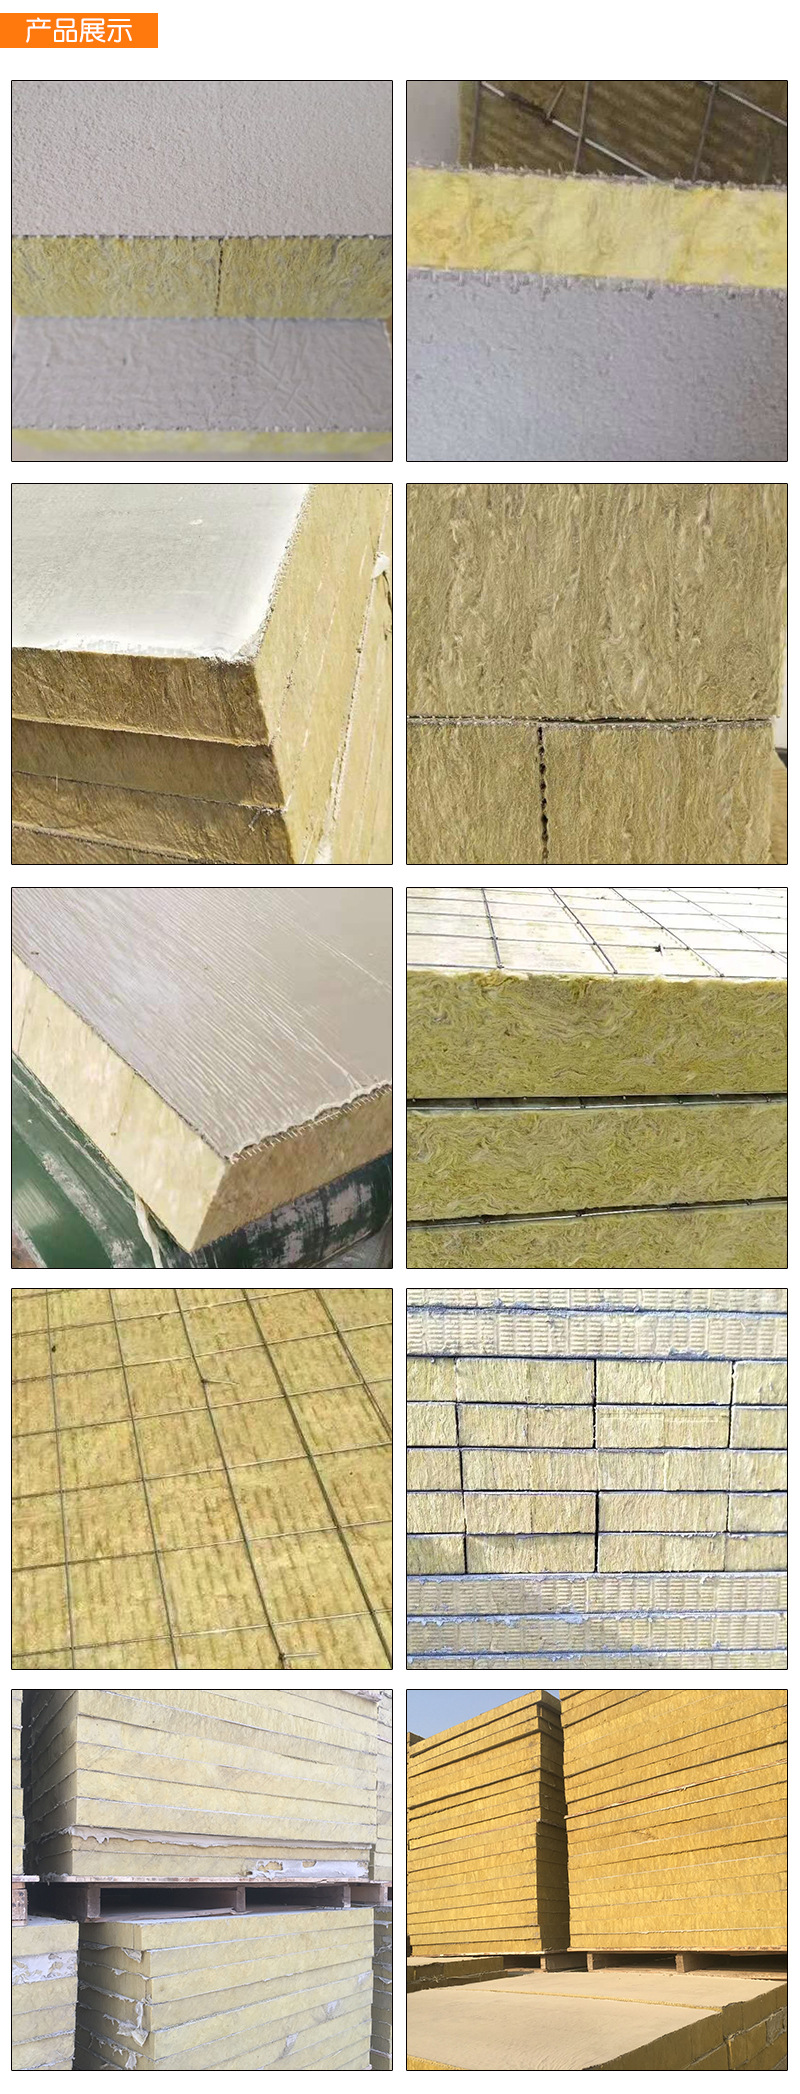 岩棉复合板 厂家福洛斯直销高密度双面砂浆外墙保温复合岩棉板 岩棉复合板厂示例图12